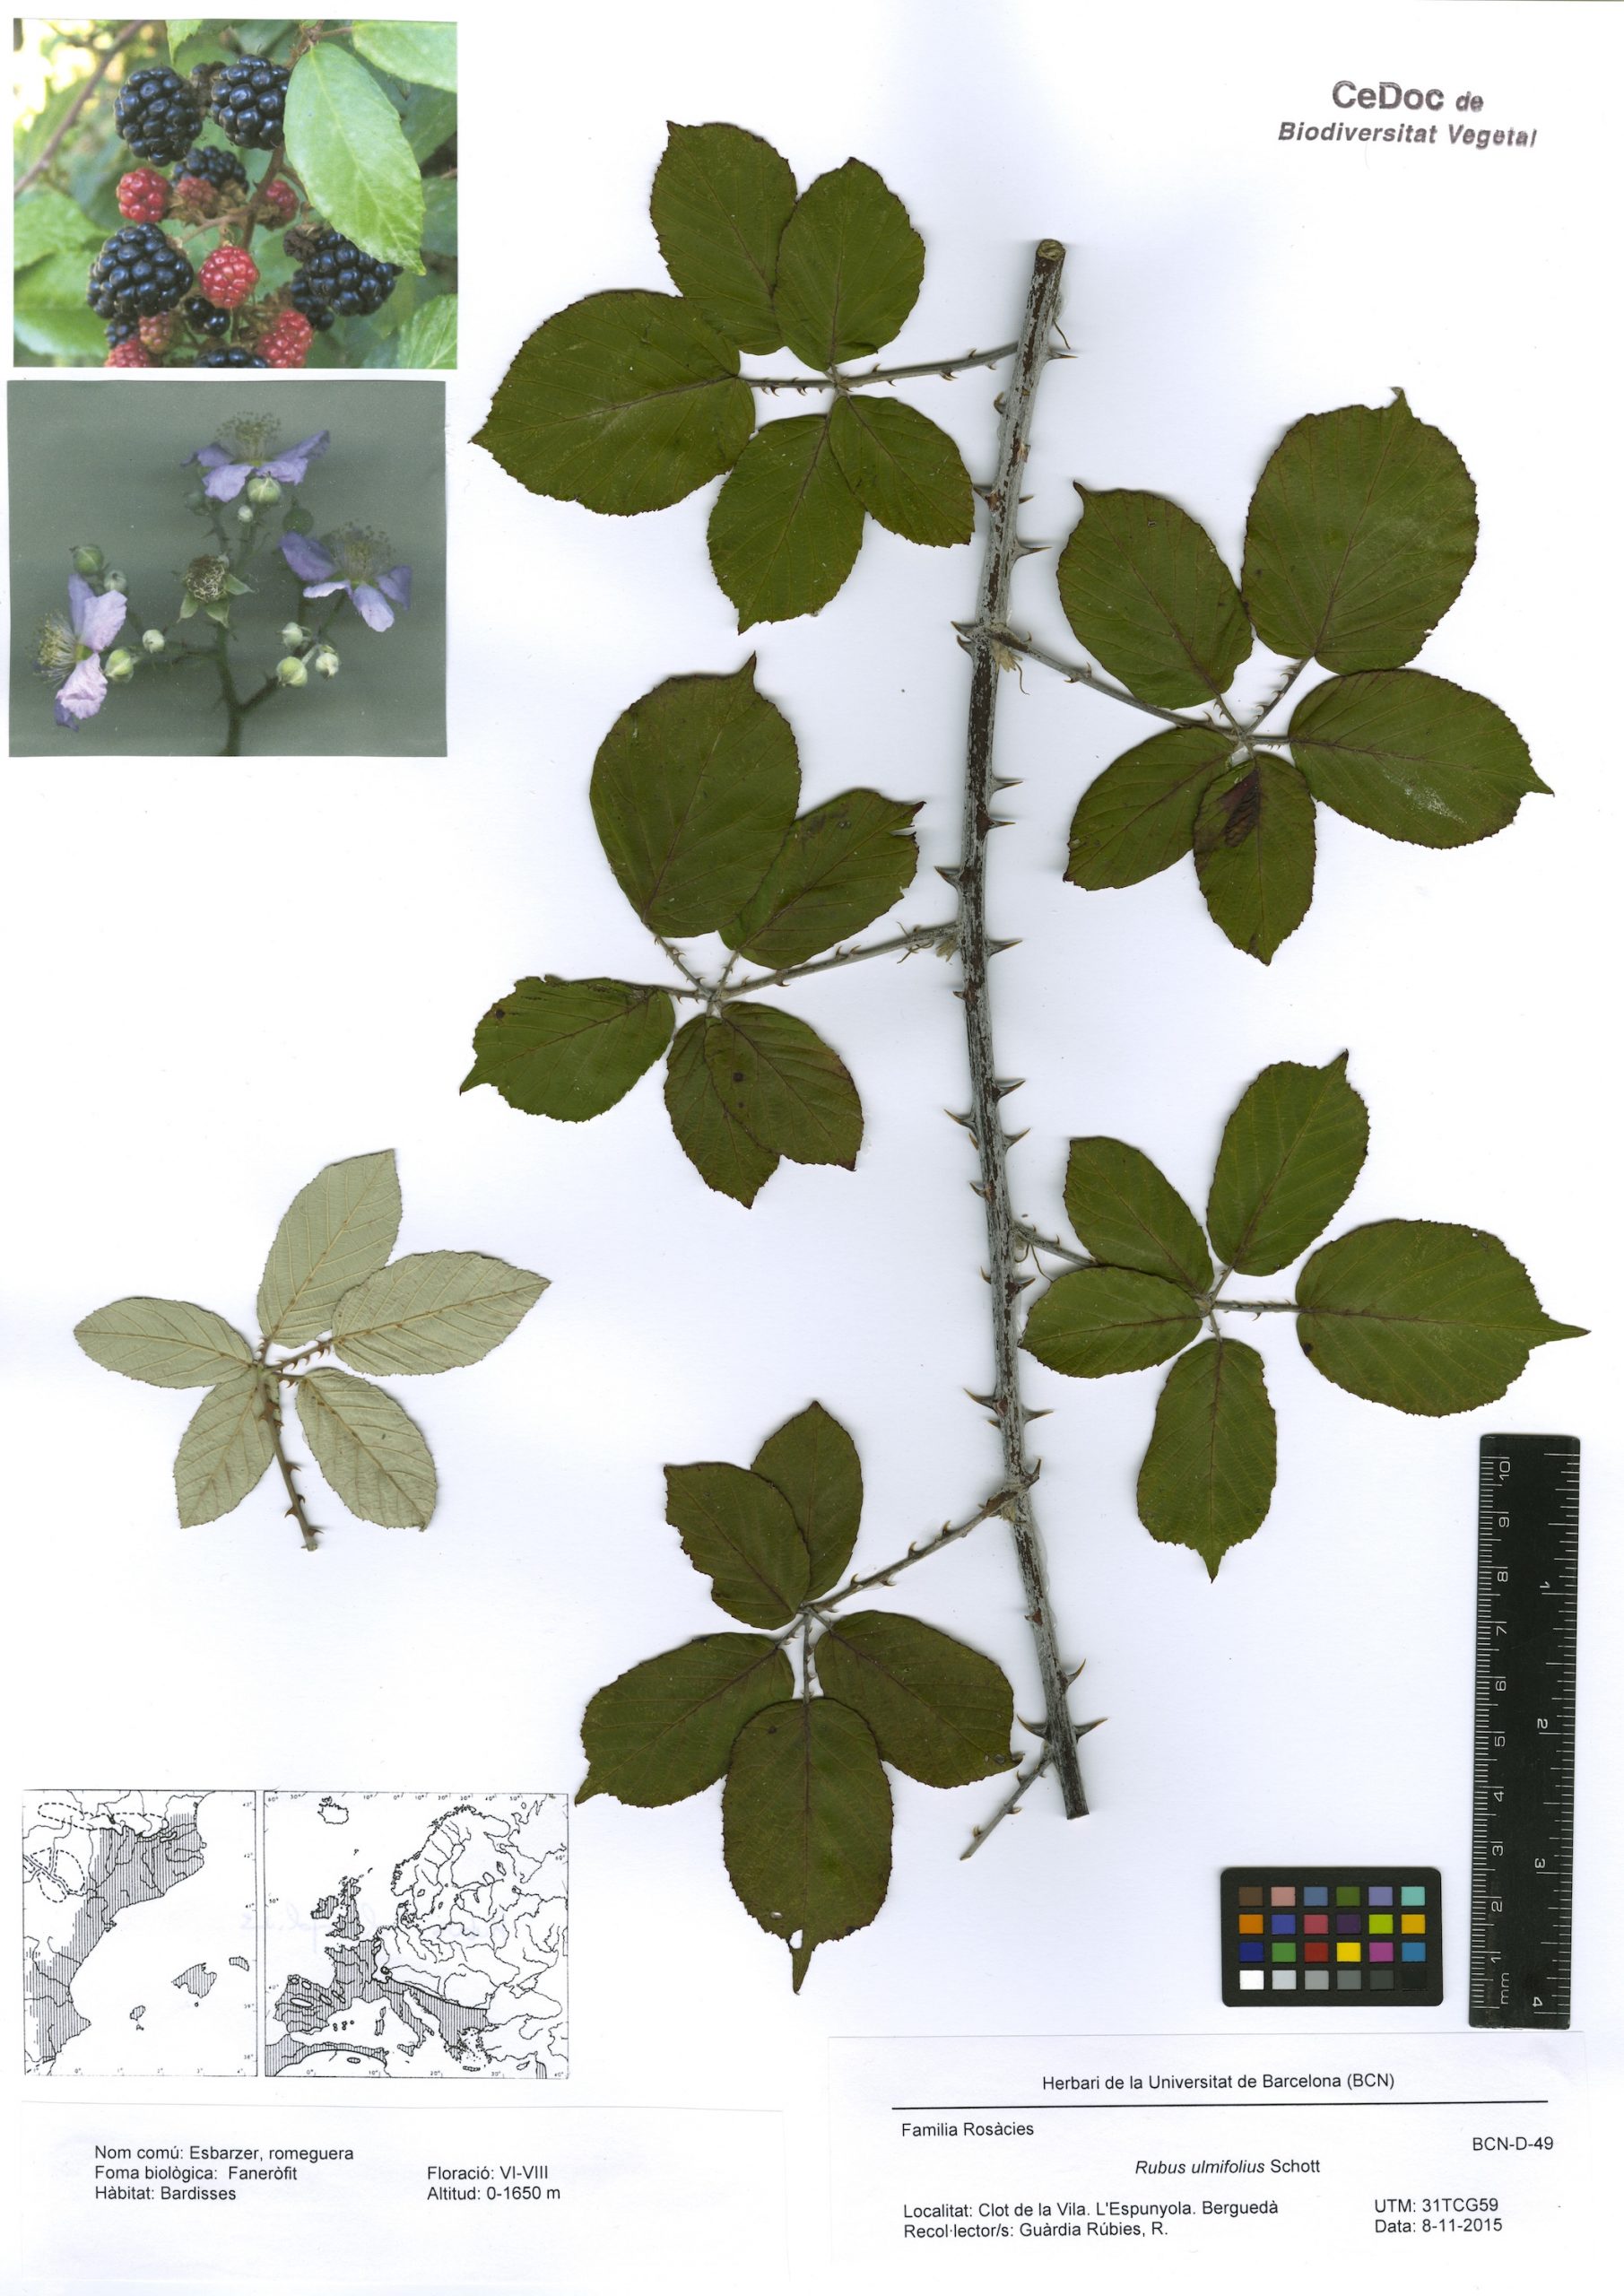 Rubus ulmifolius Schott (Abarta, esbarzer, esbarzer de móres, romeguer, romeguera)